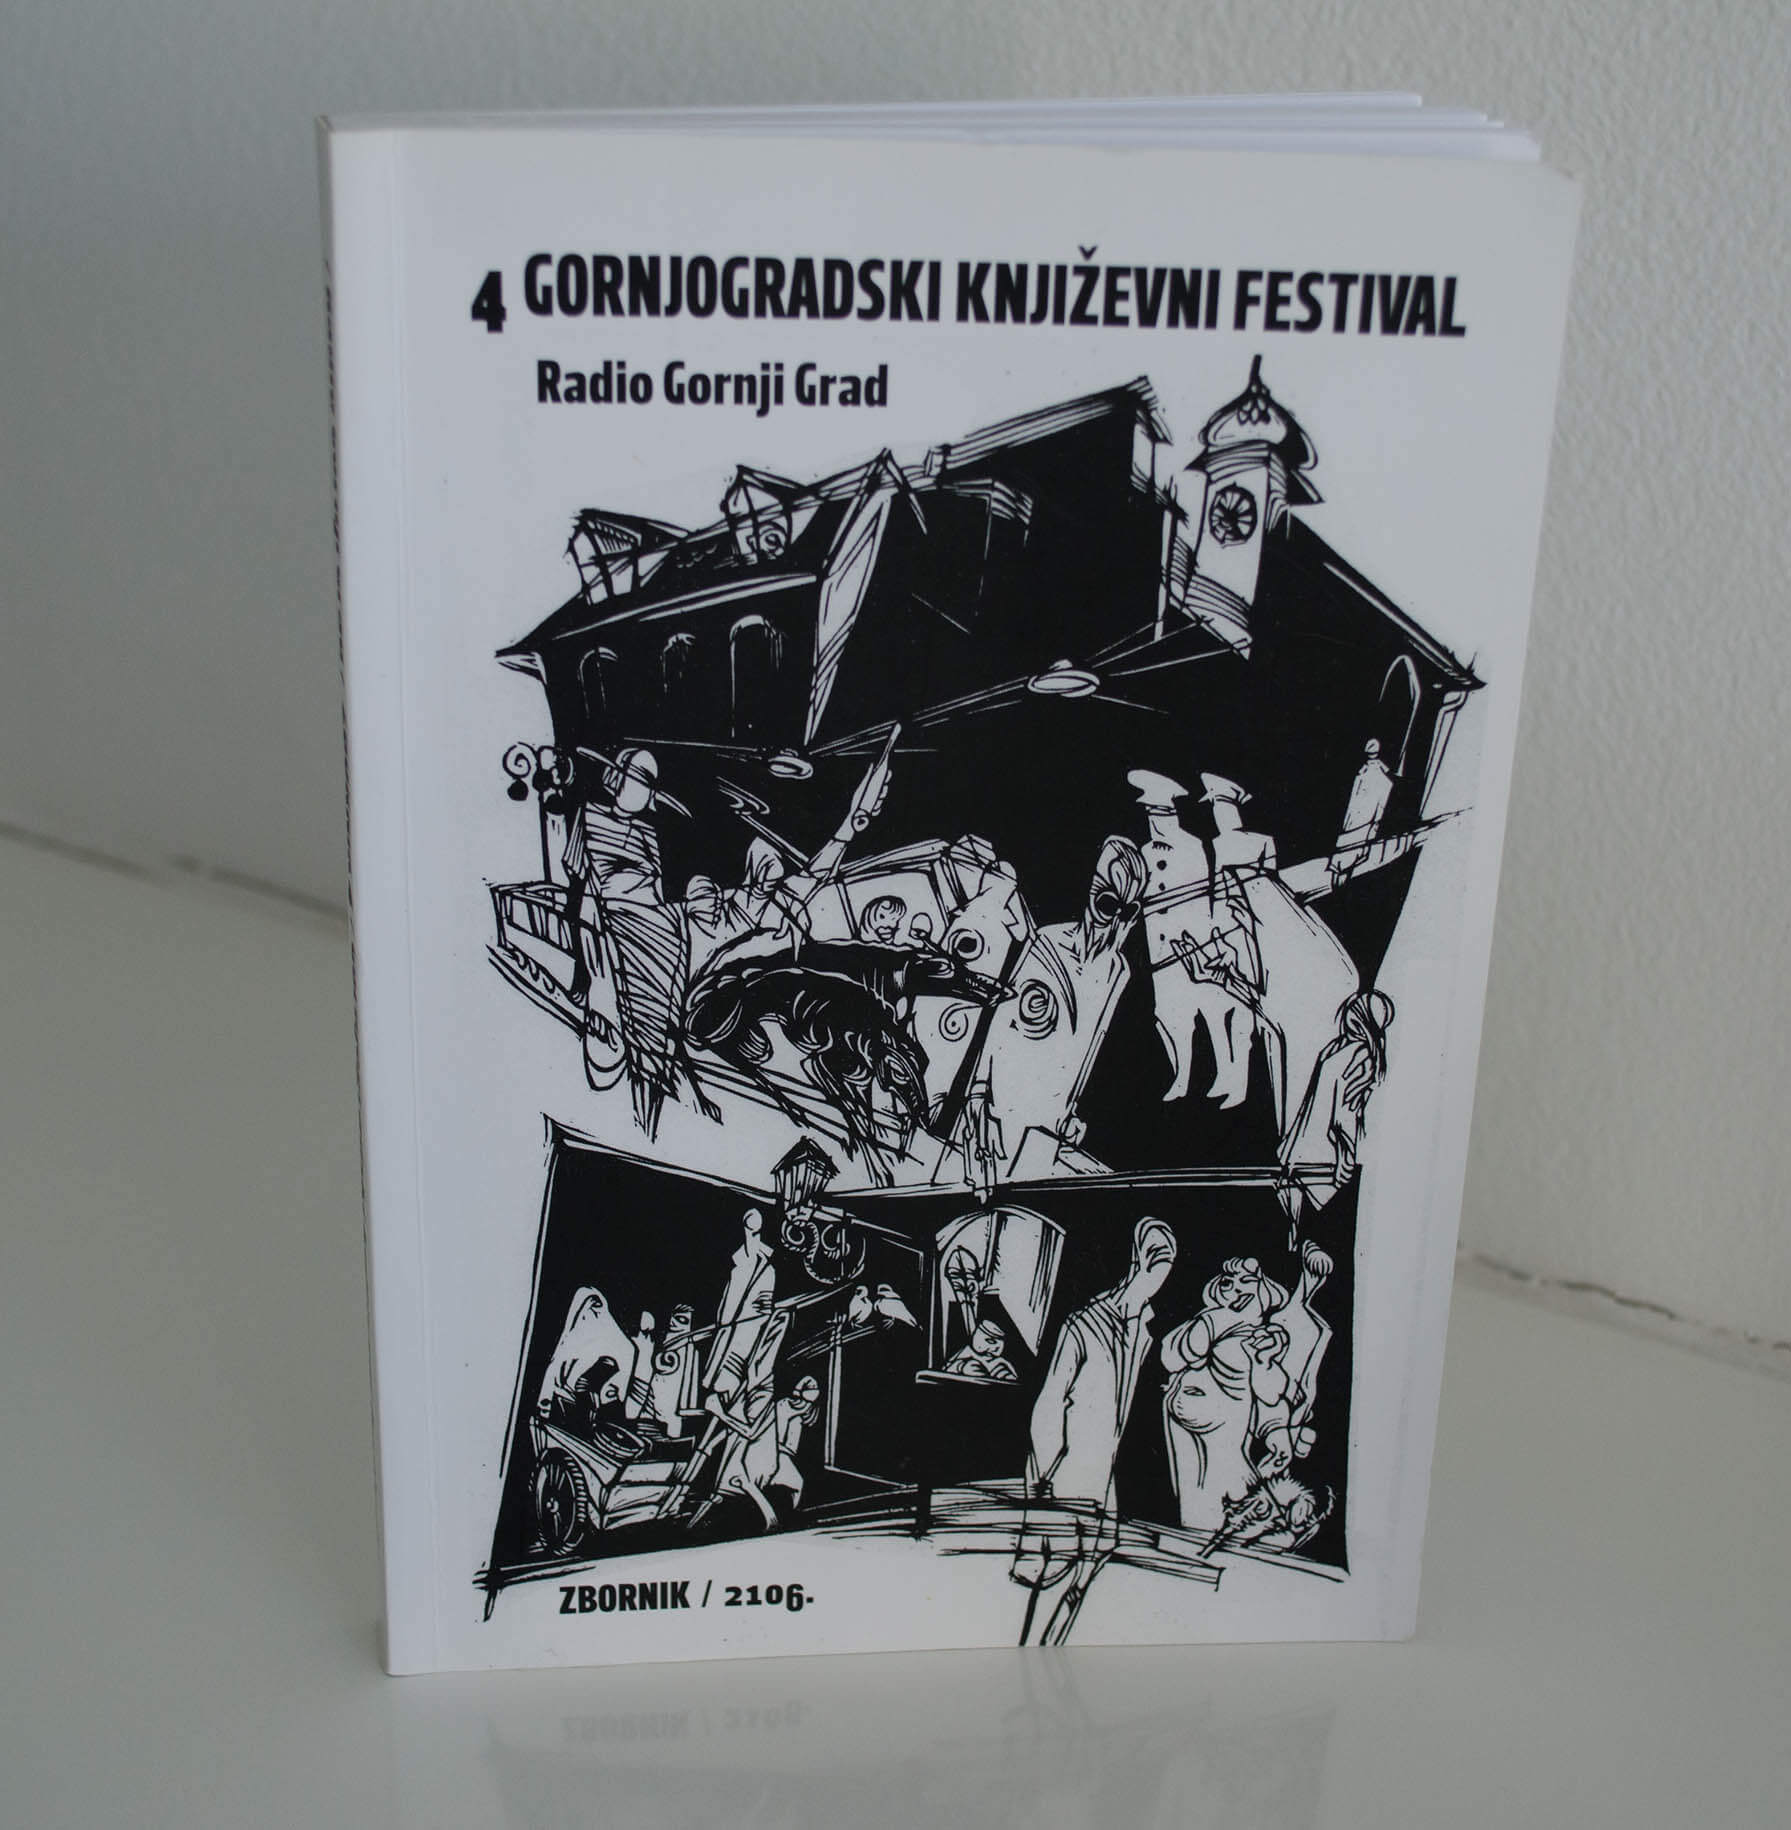 4 . Gornjogradski knjizevni festival